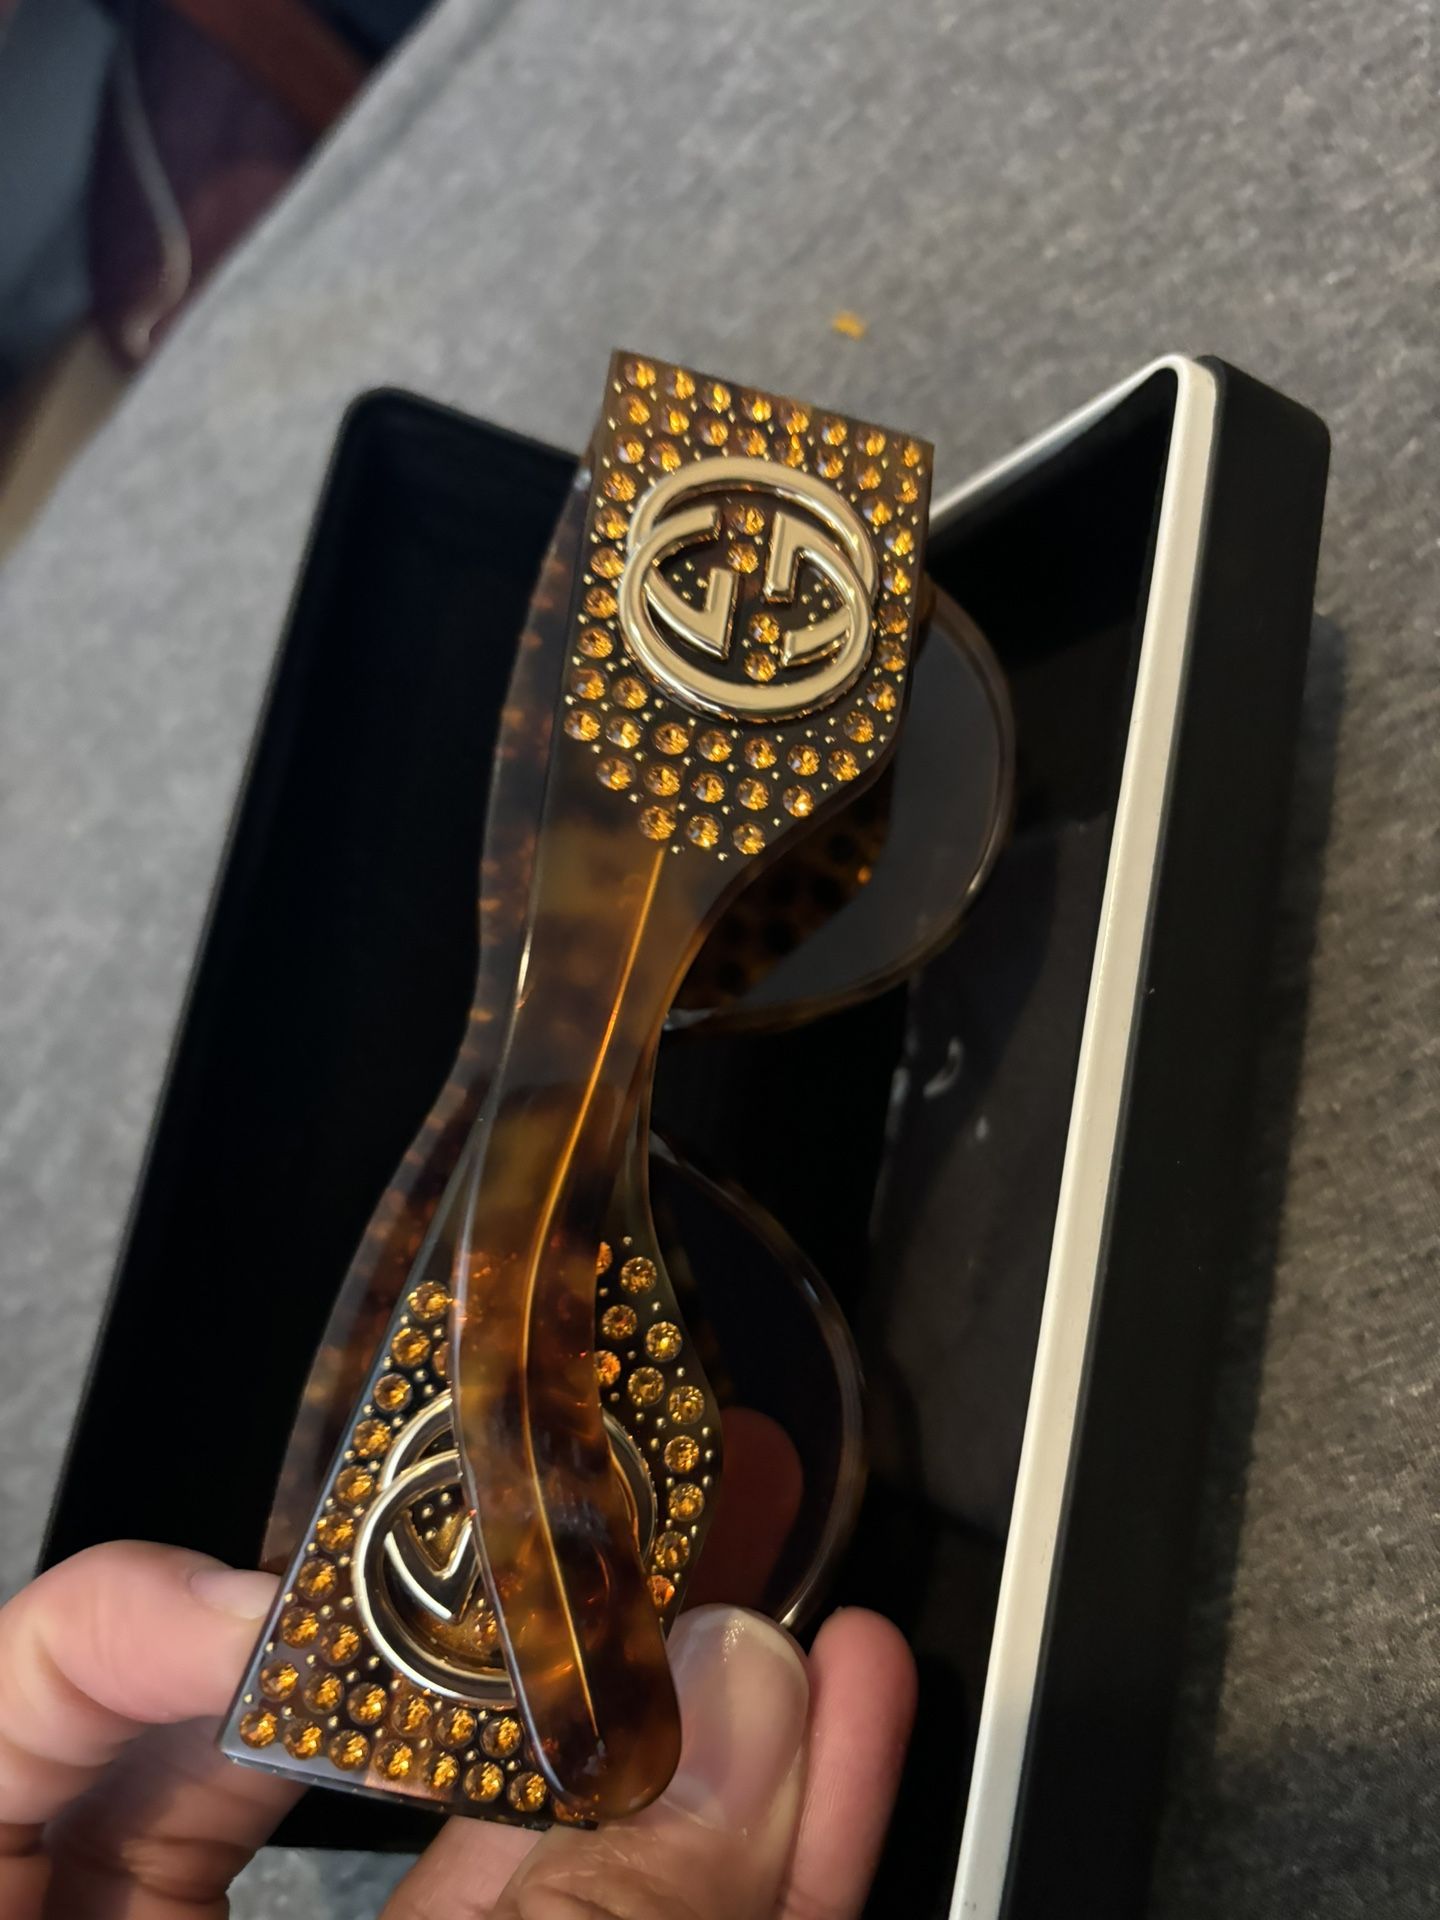 Brand New Gucci Glasses $260